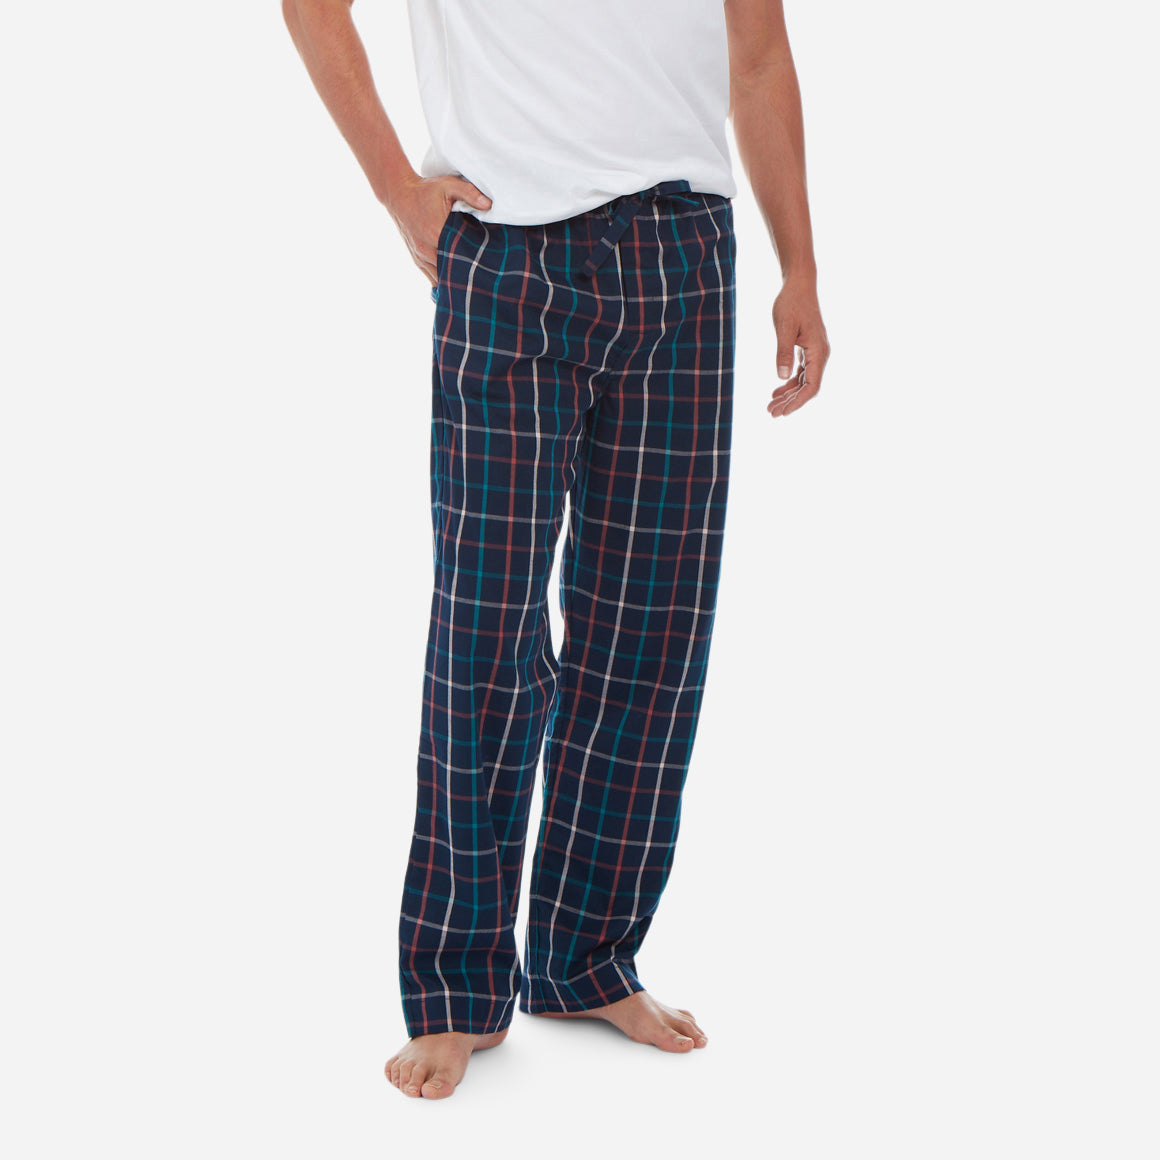 Men's Cotton Lounge Pants